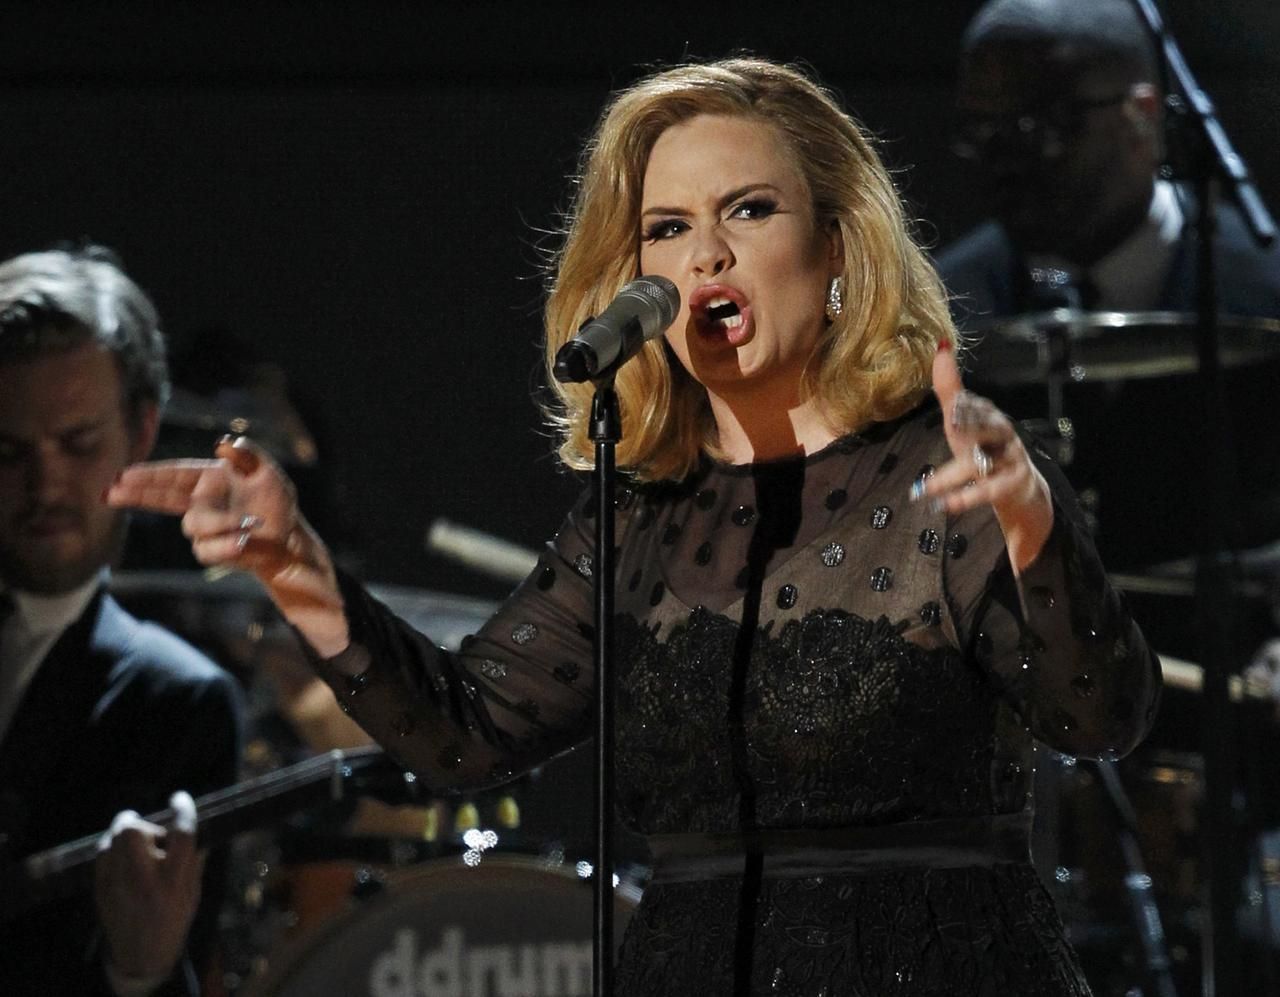 Grammy 2012 - Adele